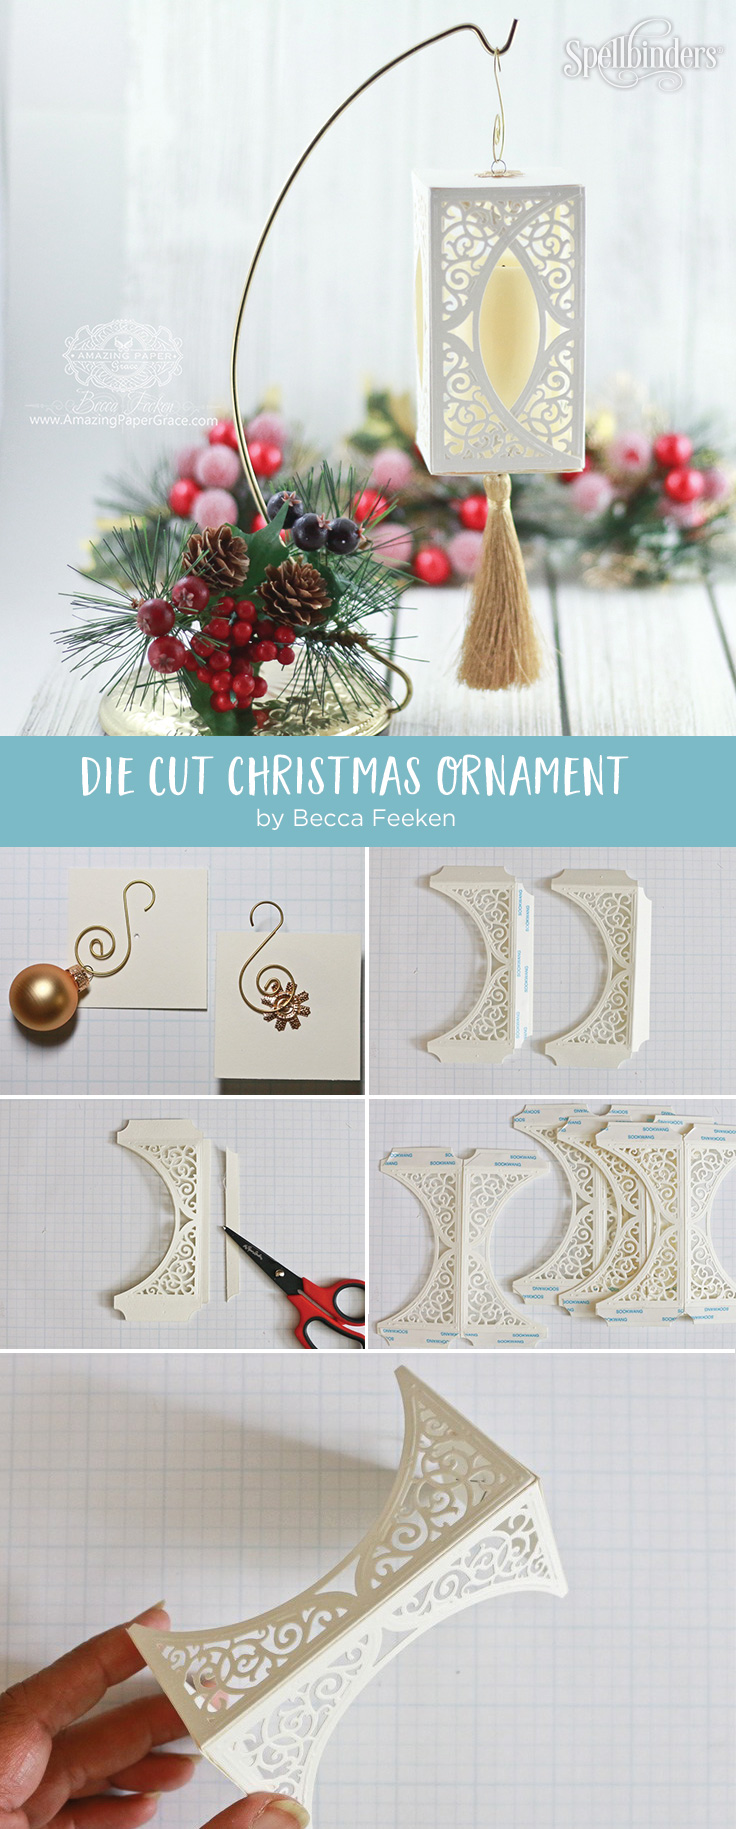 Die Cut Ornament Series: Swirl Bliss by Becca Feeken using Spellbinders S4-505 Swirl Bliss Pocket dies #spellbinders #diecutting #christmasornament #papercrafting